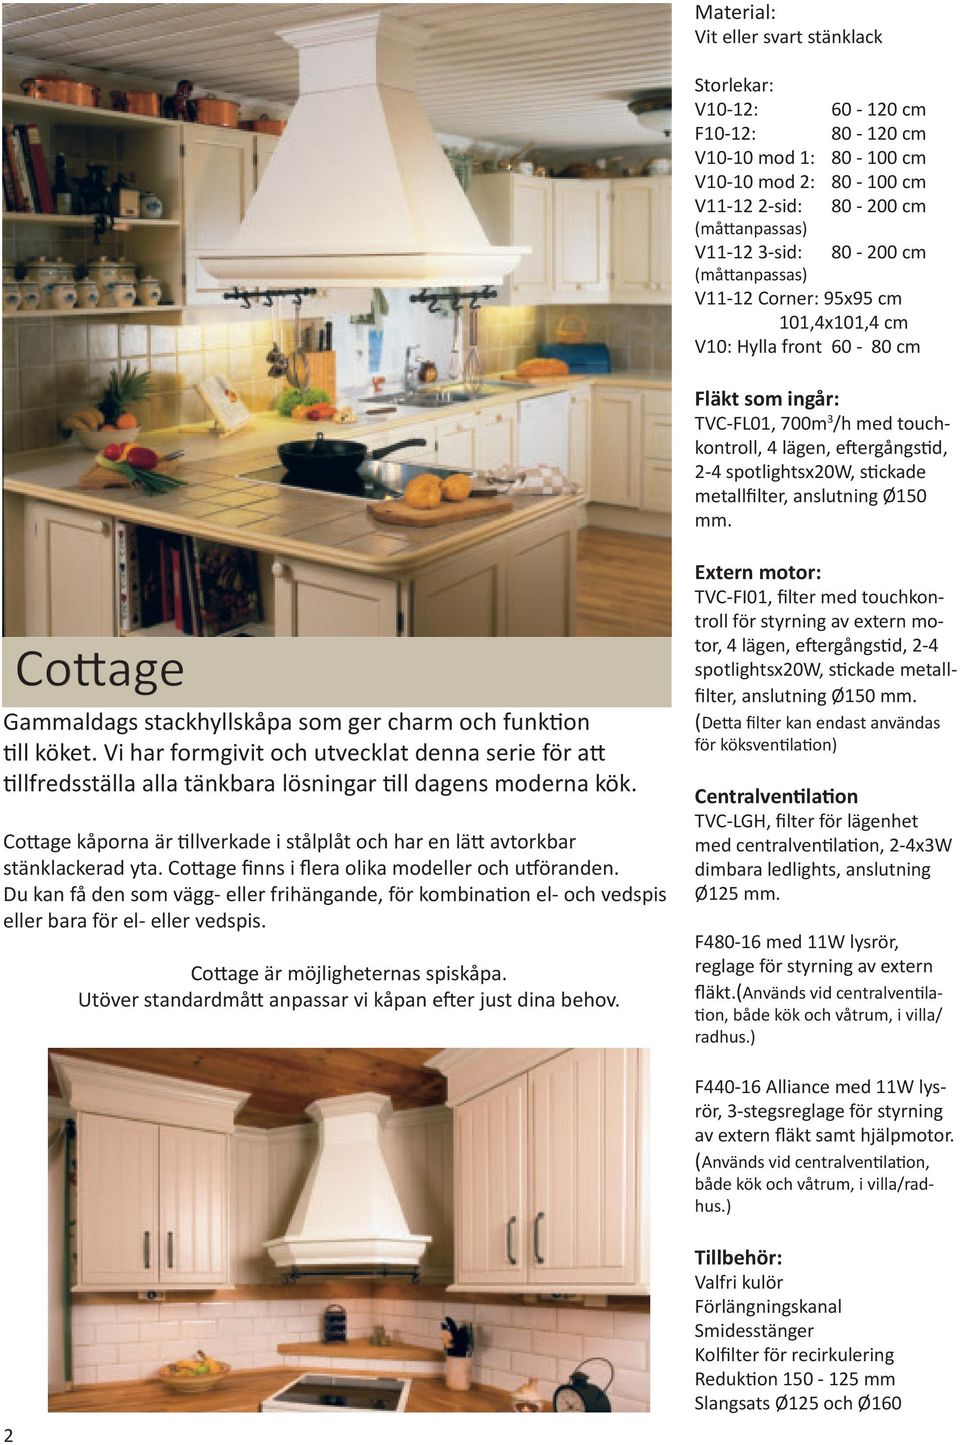 Cottage Gammaldags stackhyllskåpa som ger charm och funktion till köket. Vi har formgivit och utvecklat denna serie för att tillfredsställa alla tänkbara lösningar till dagens moderna kök.